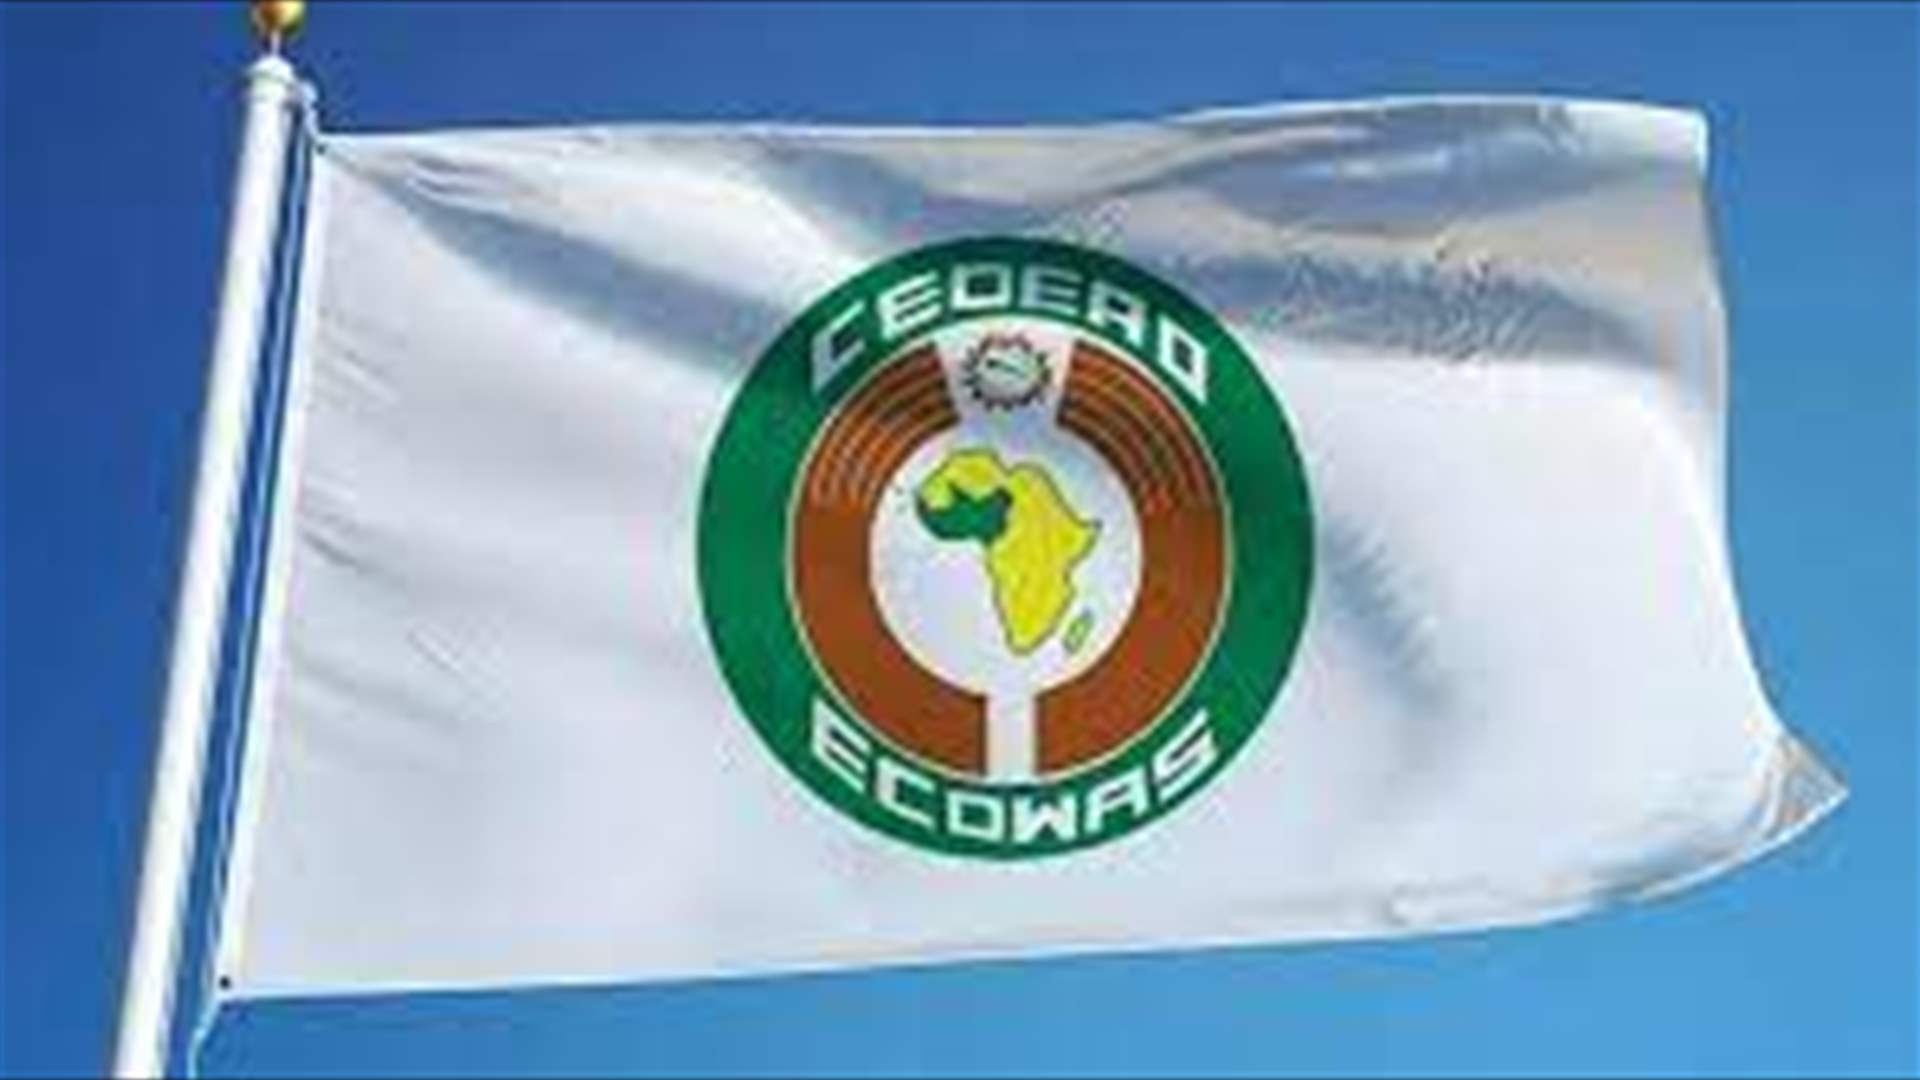  النيجر ومالي وبوركينا فاسو انسحبت من المجموعة الاقتصادية لدول غرب إفريقيا